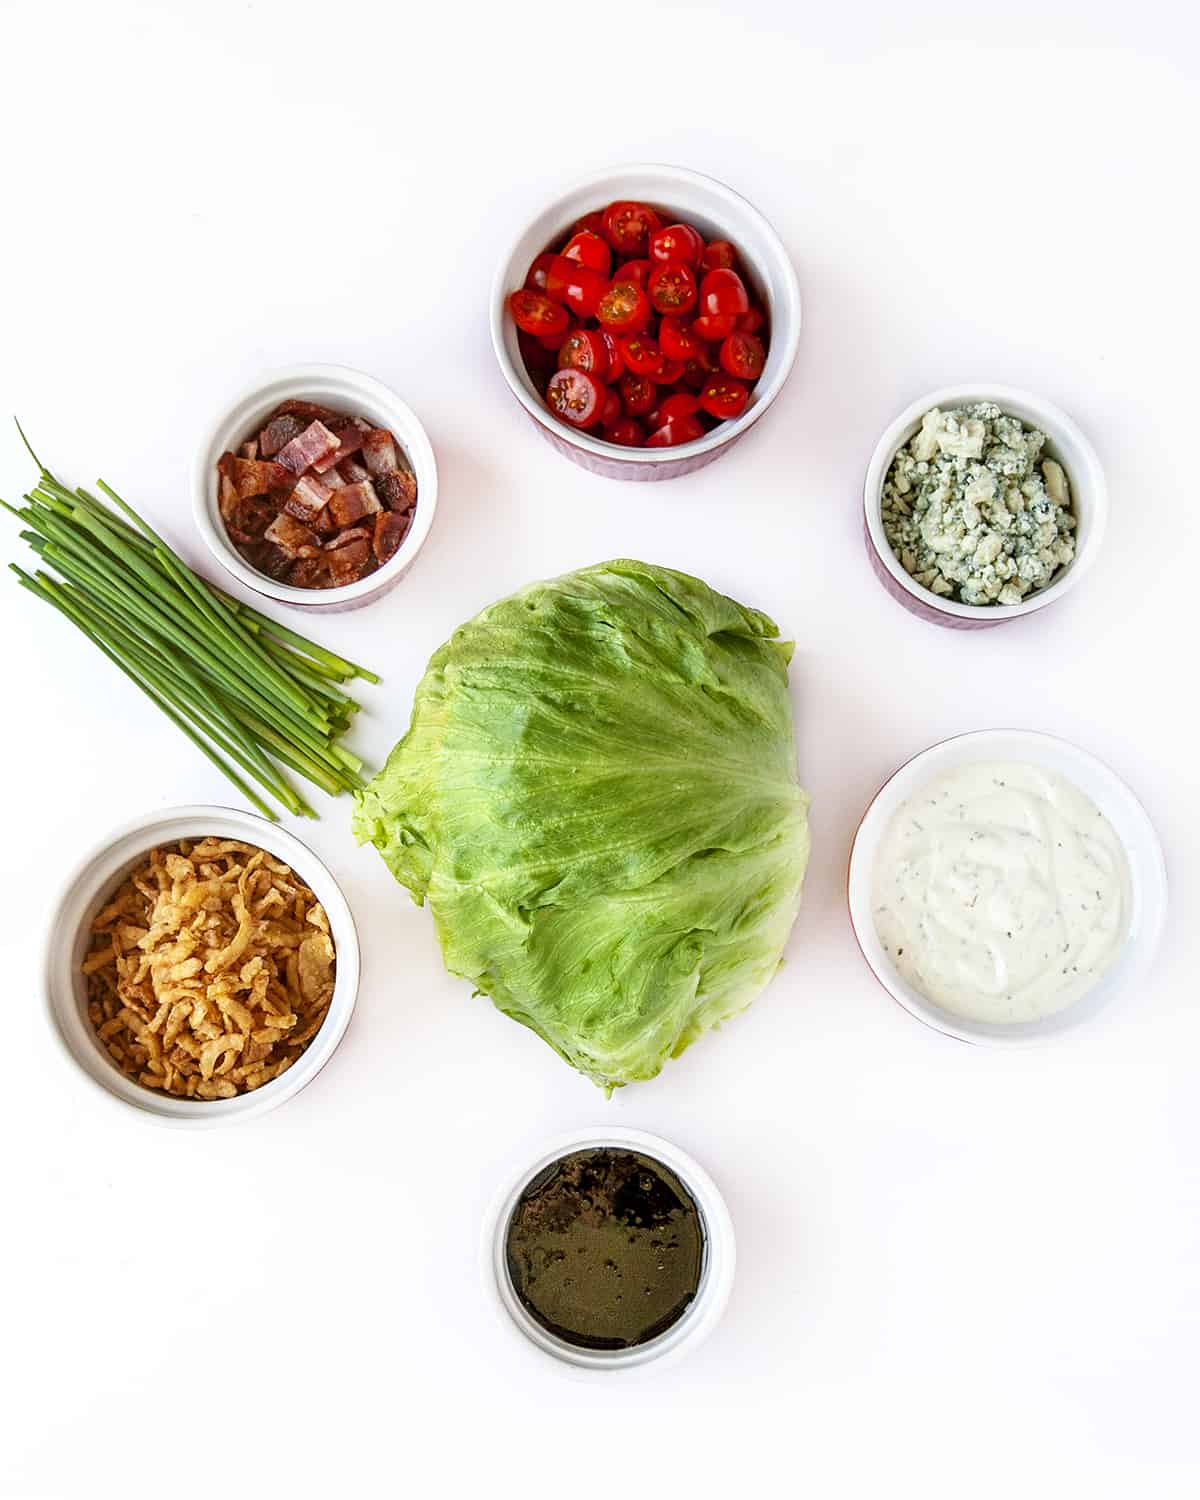 Best Ever Wedge Salad ingredients. 